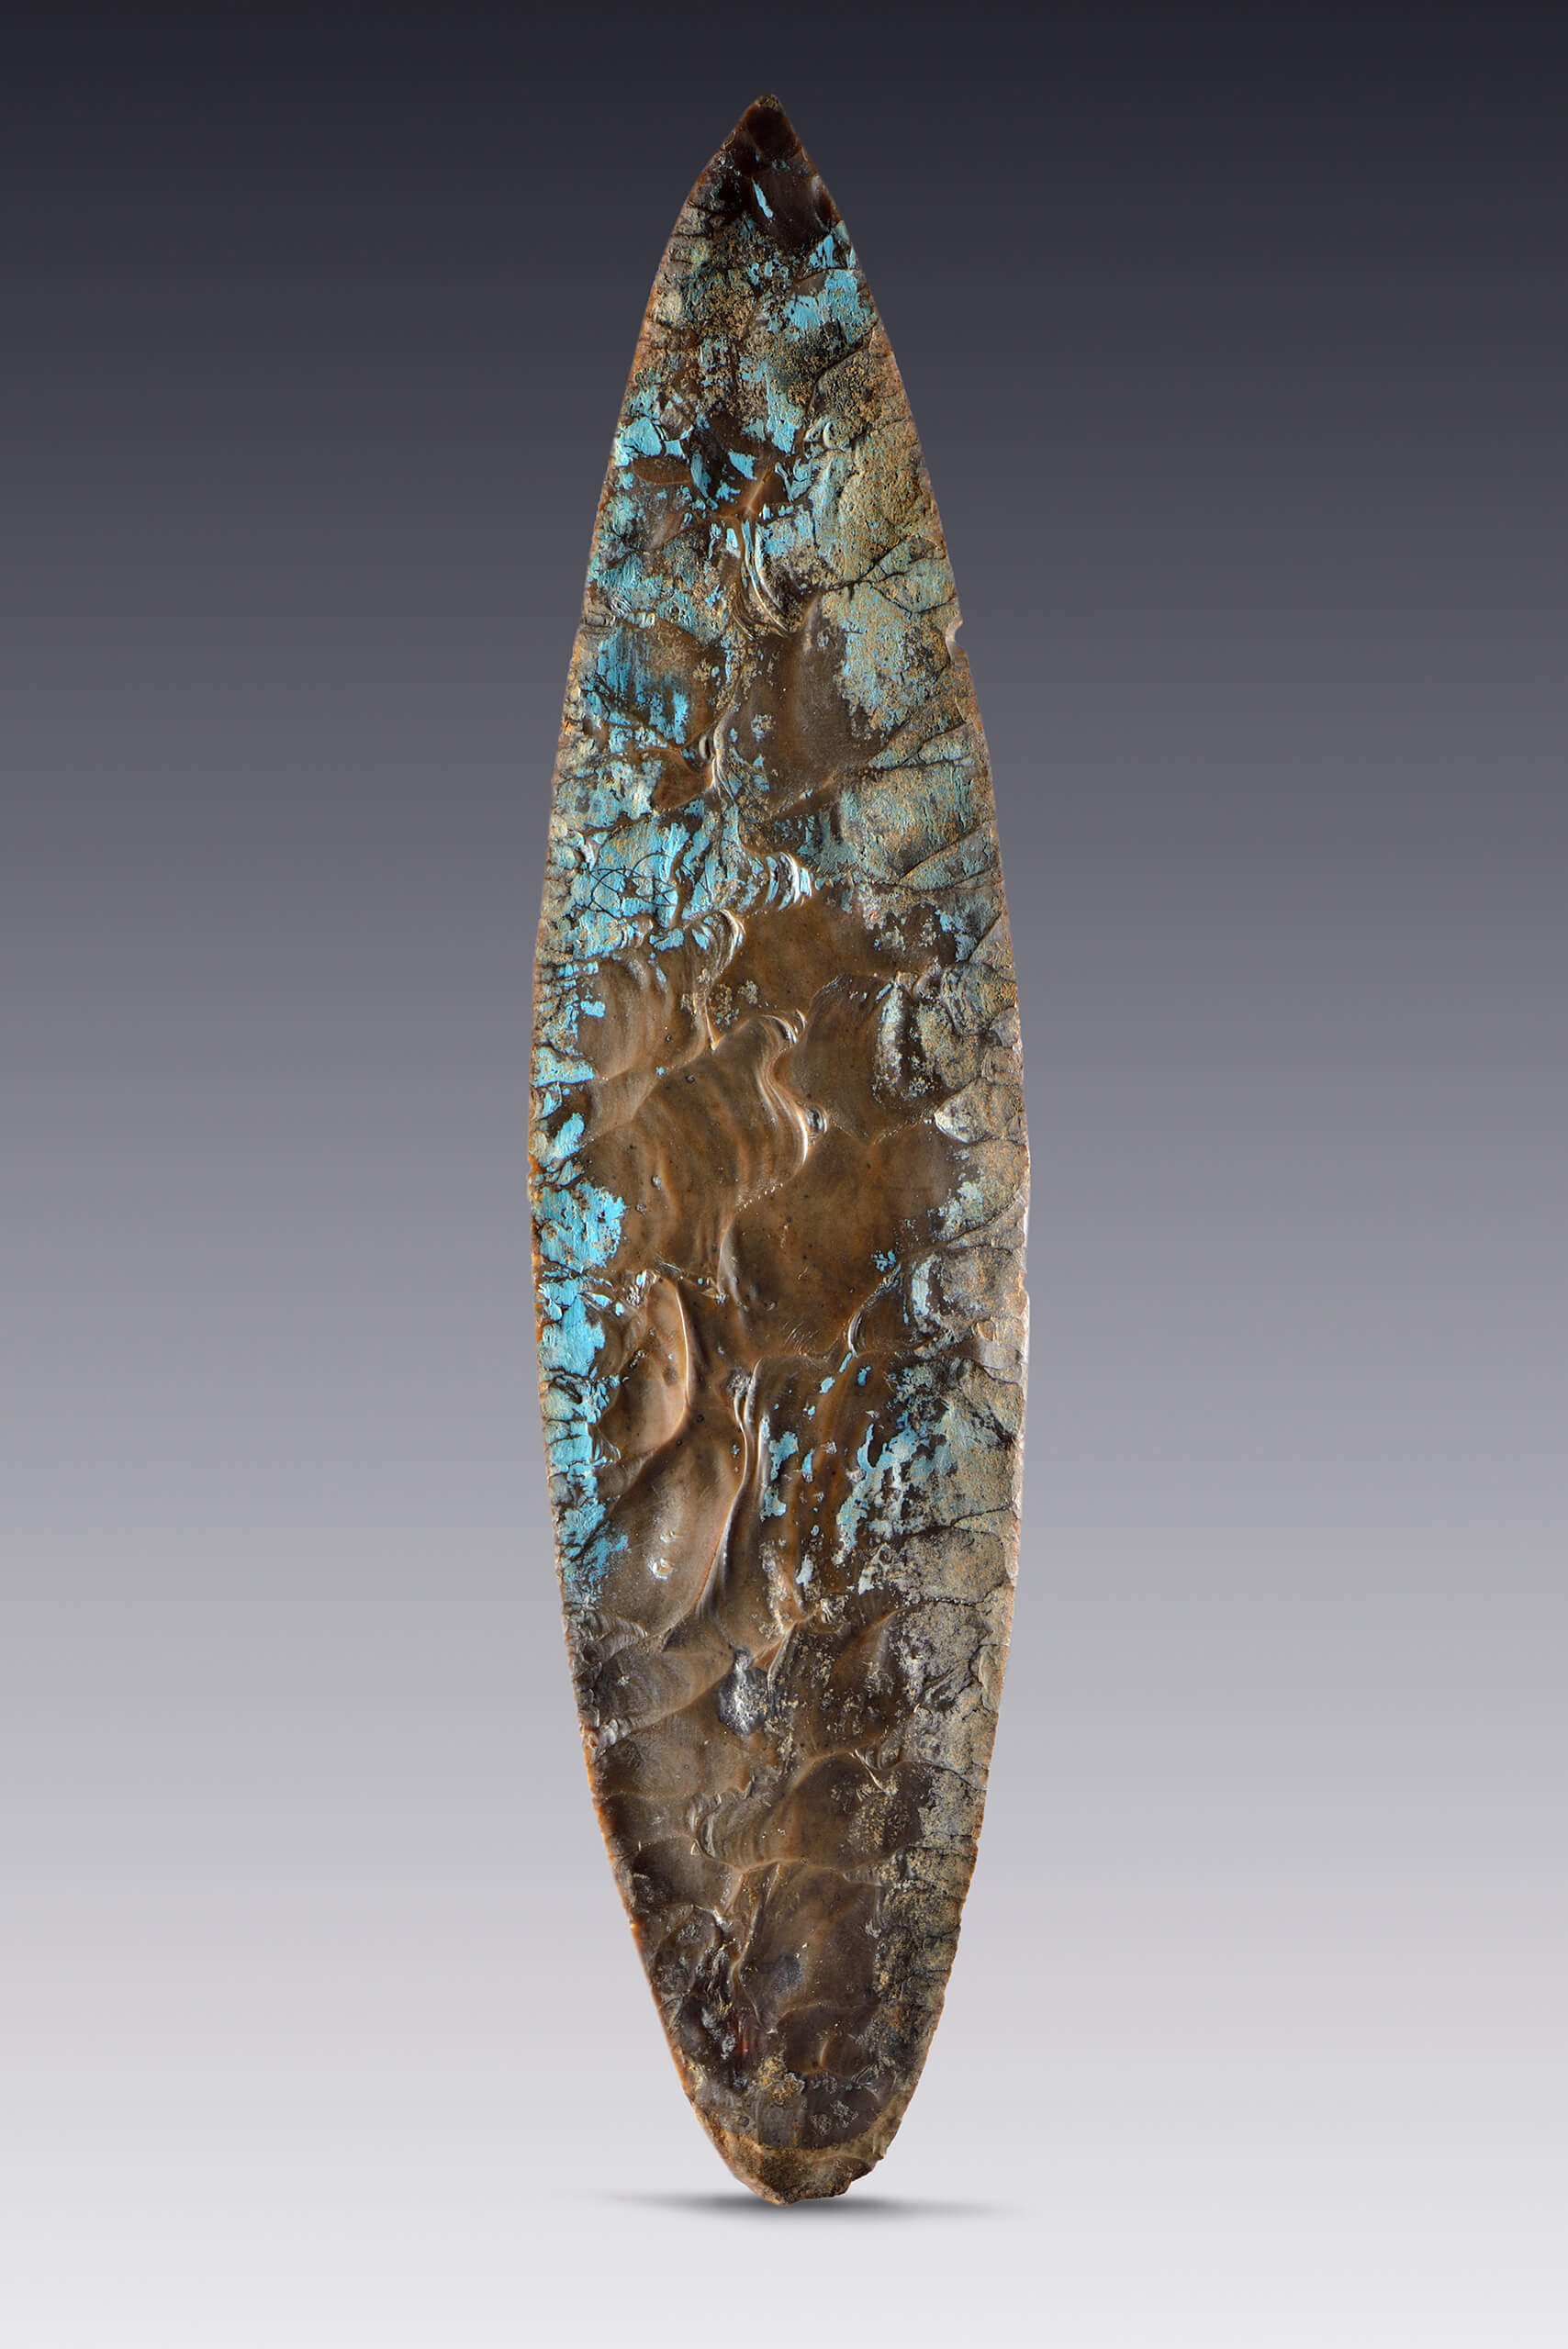 Cuchillo recubierto de estuco azul | El México antiguo. Salas de Arte Prehispánico | Museo Amparo, Puebla